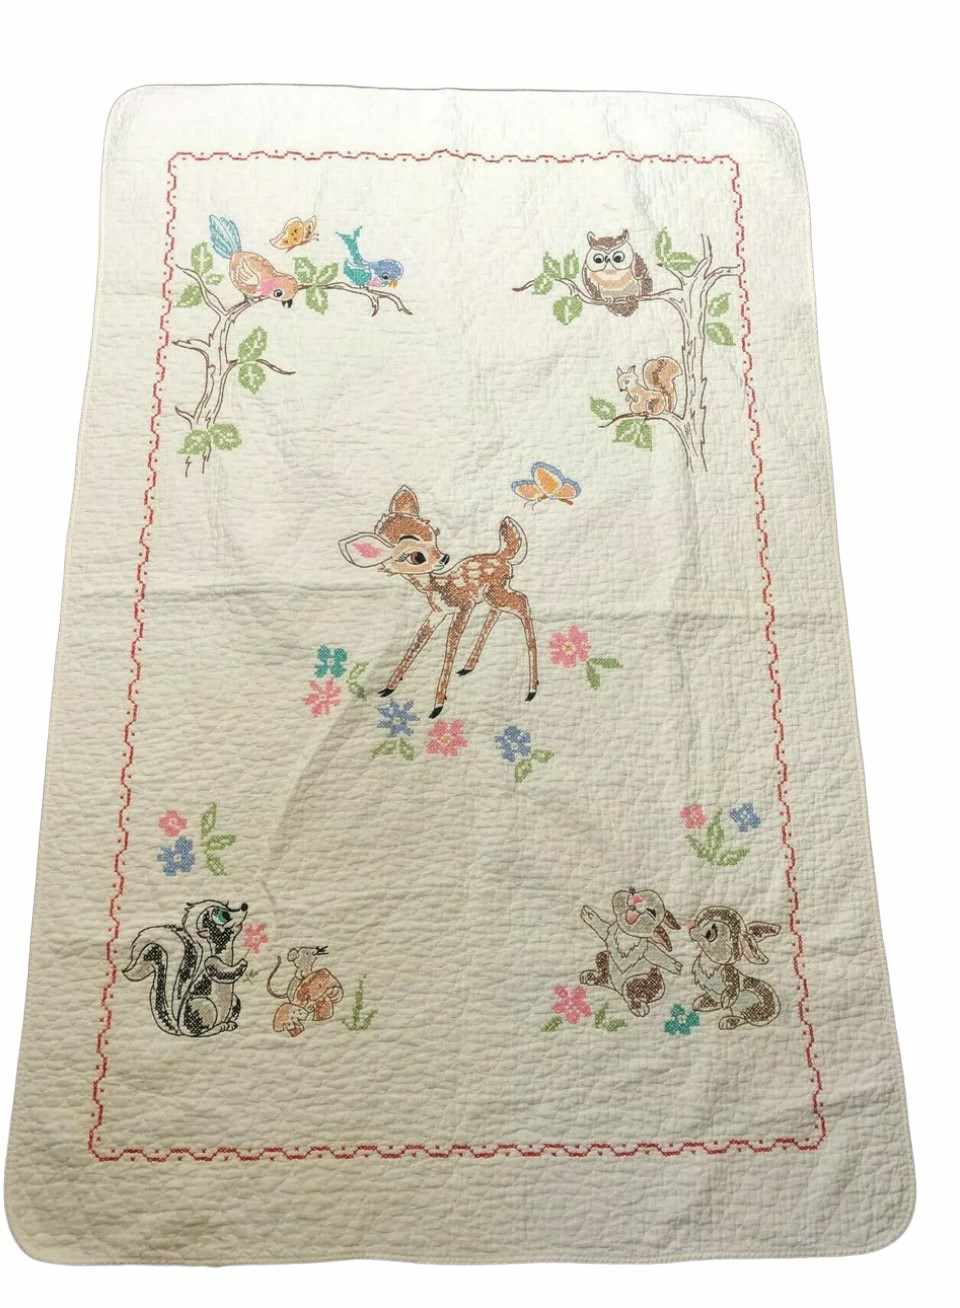 Vintage Walt Disney Bambi Quilted Nursery Crib Quilt Blanket Paragon Needlecraft